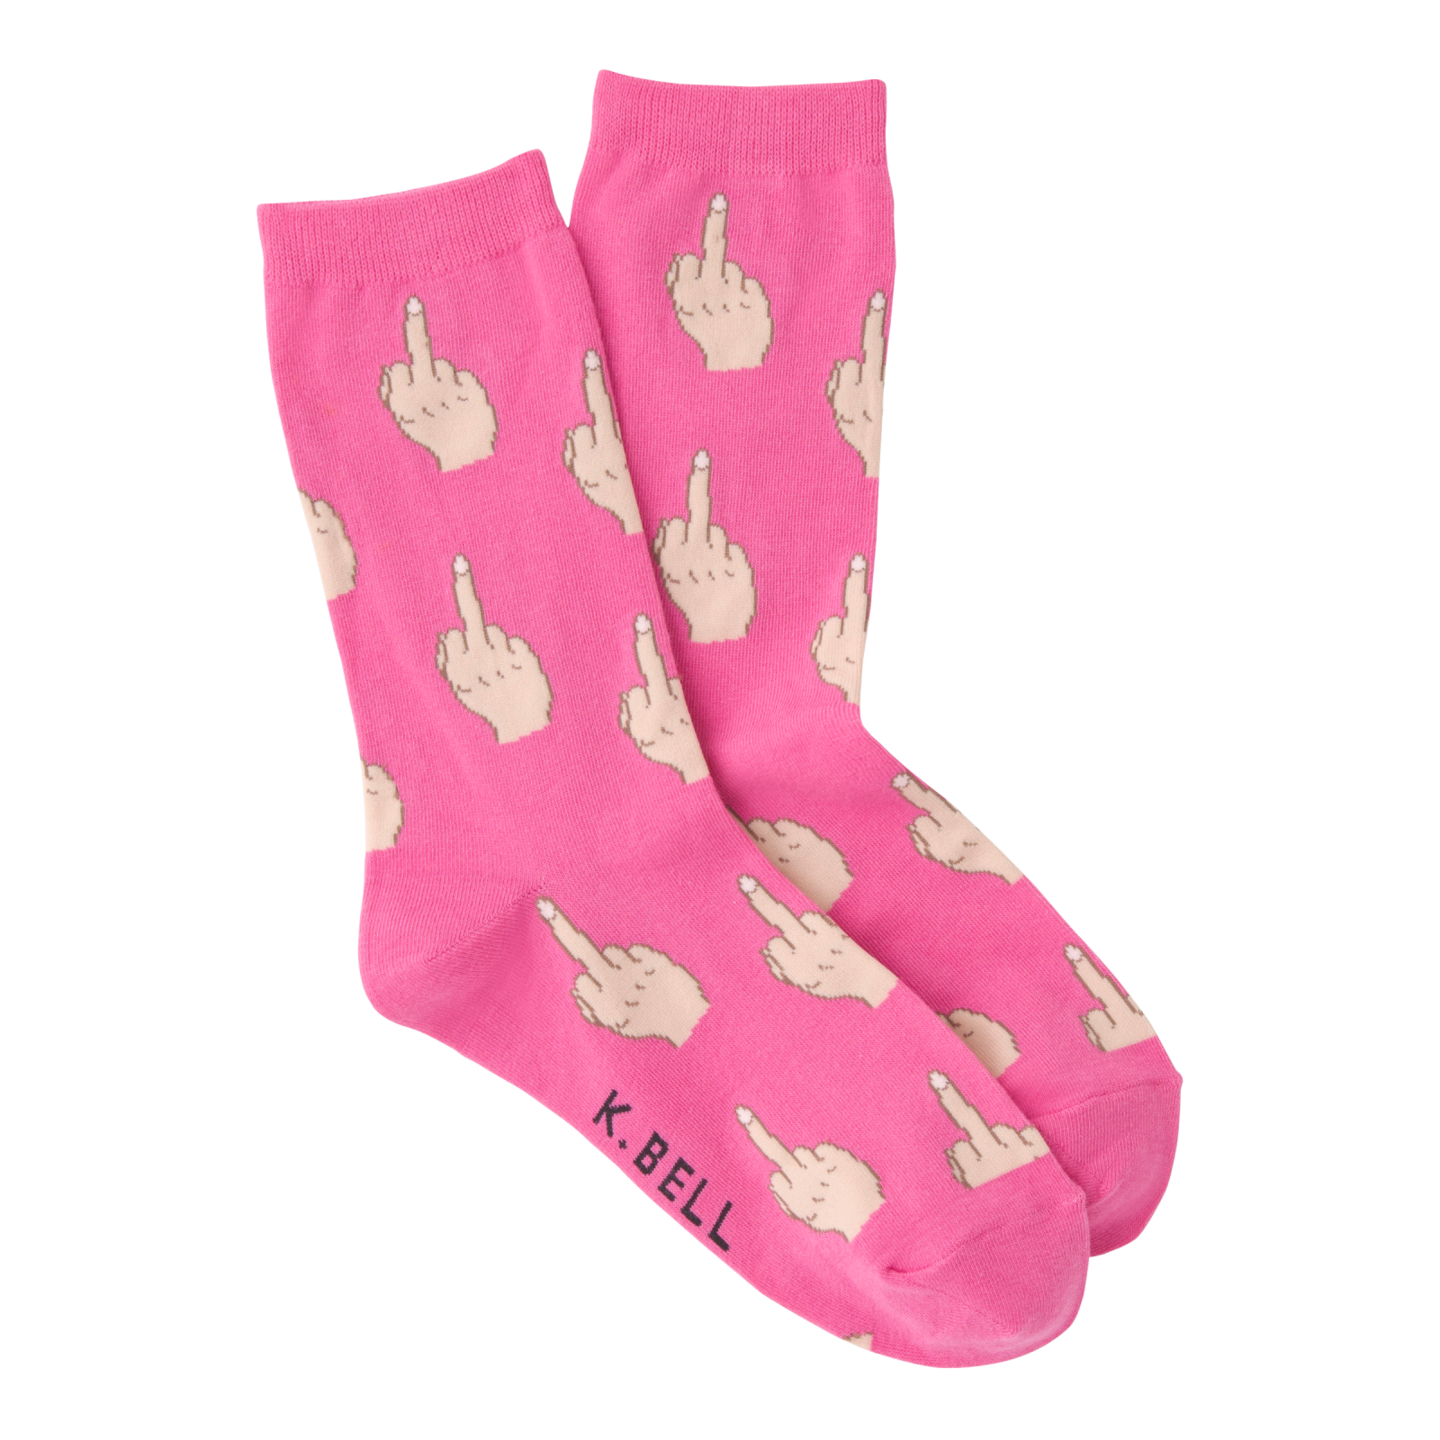 Middle Finger crew socks